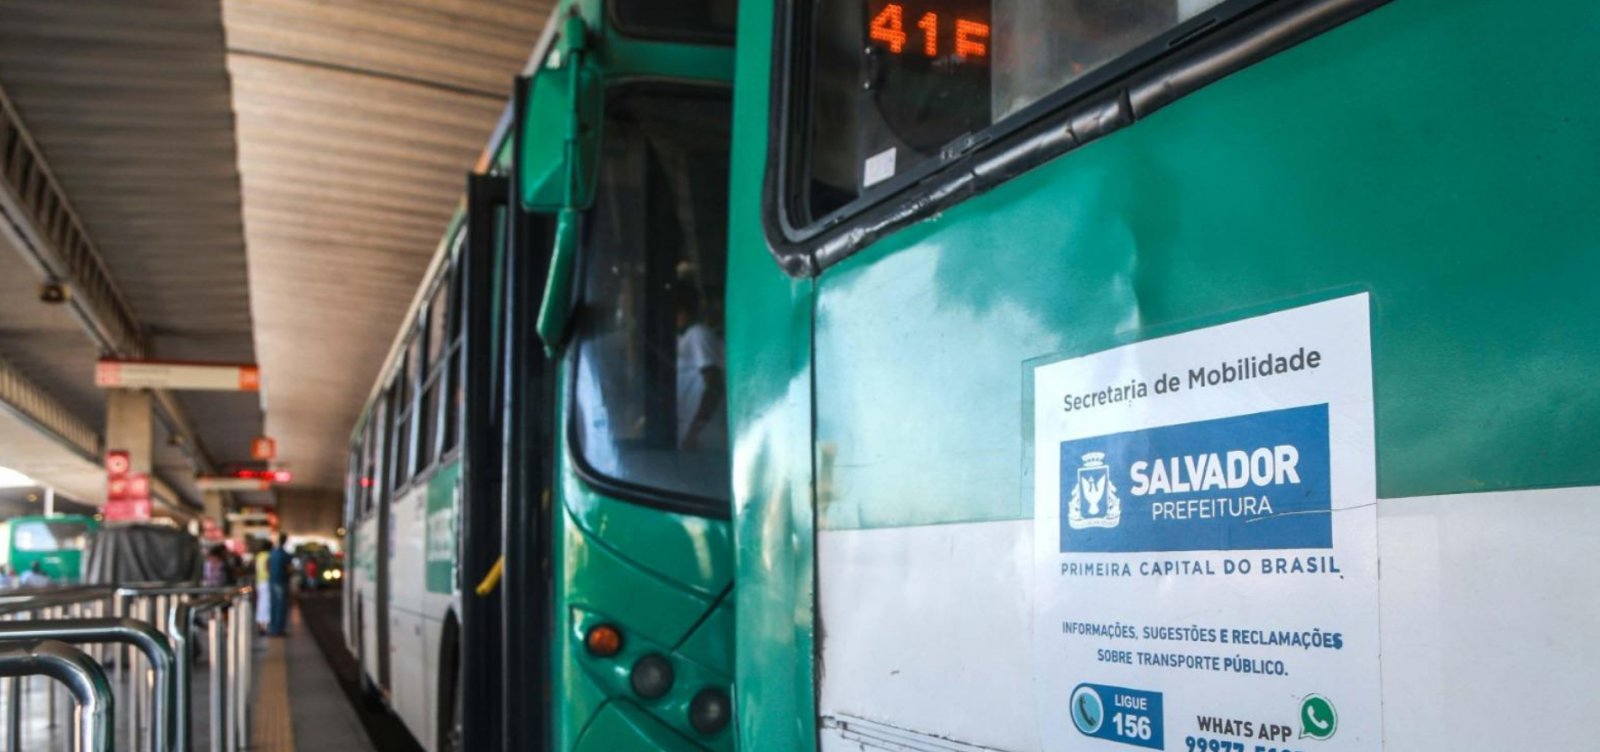 Linhas de ônibus passam por alterações a partir deste final de semana em Salvador; confira mudanças